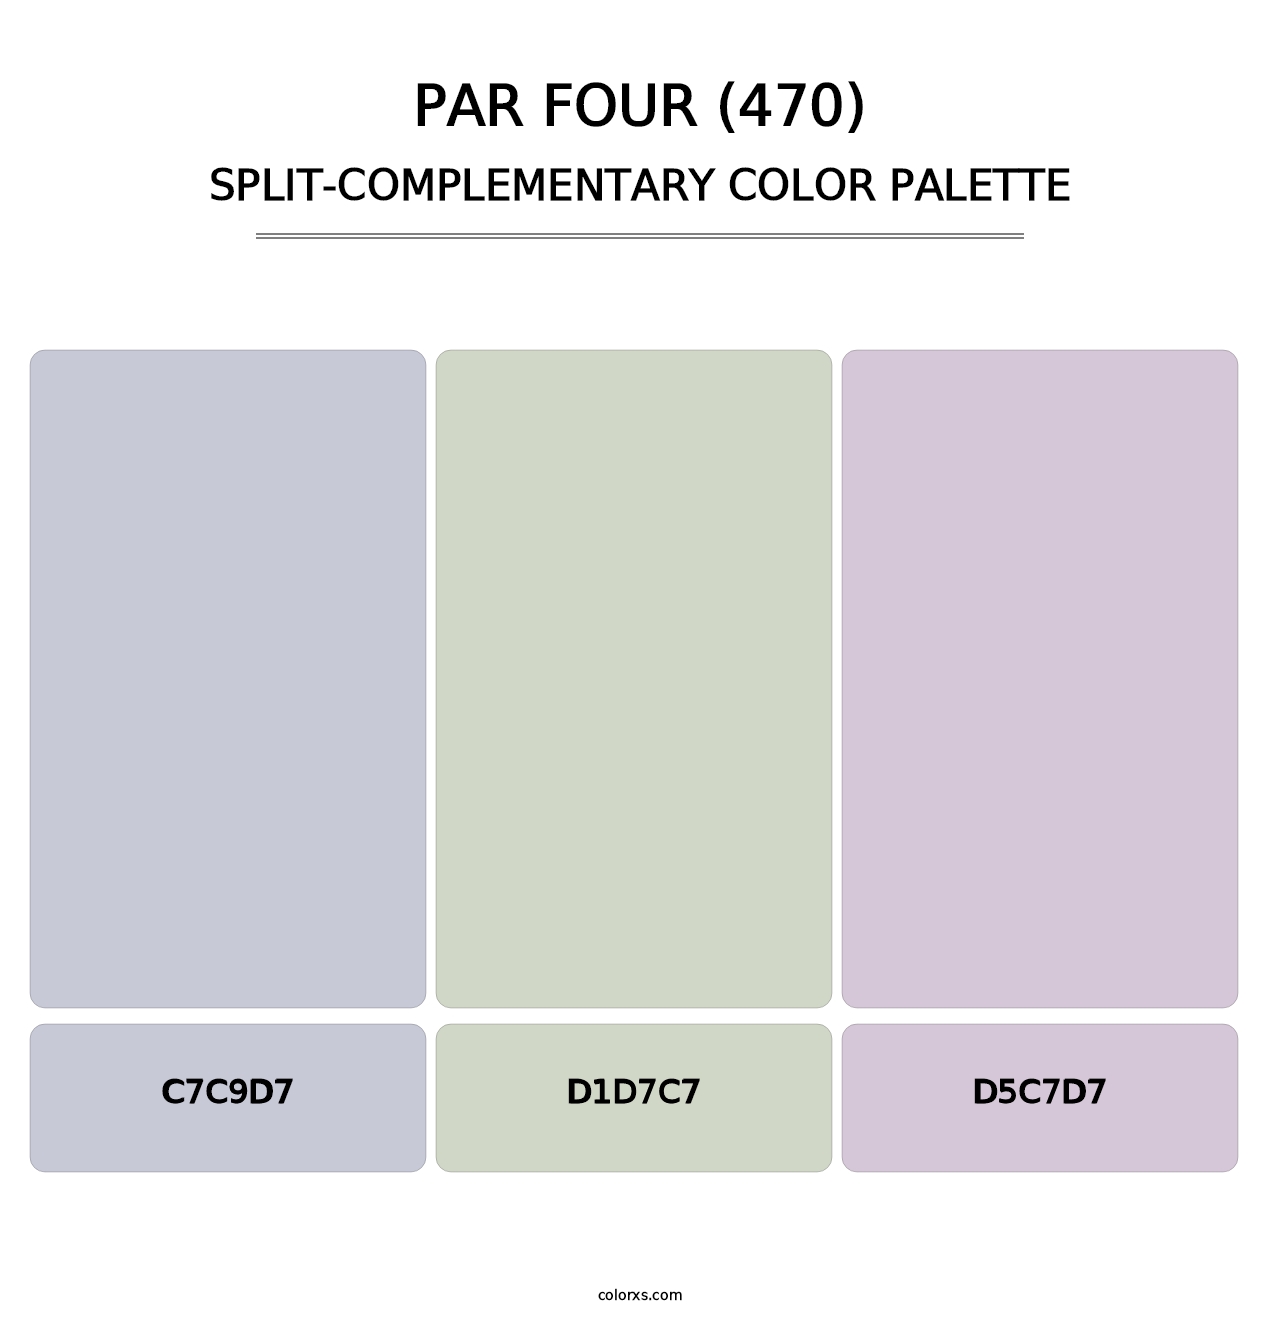 Par Four (470) - Split-Complementary Color Palette